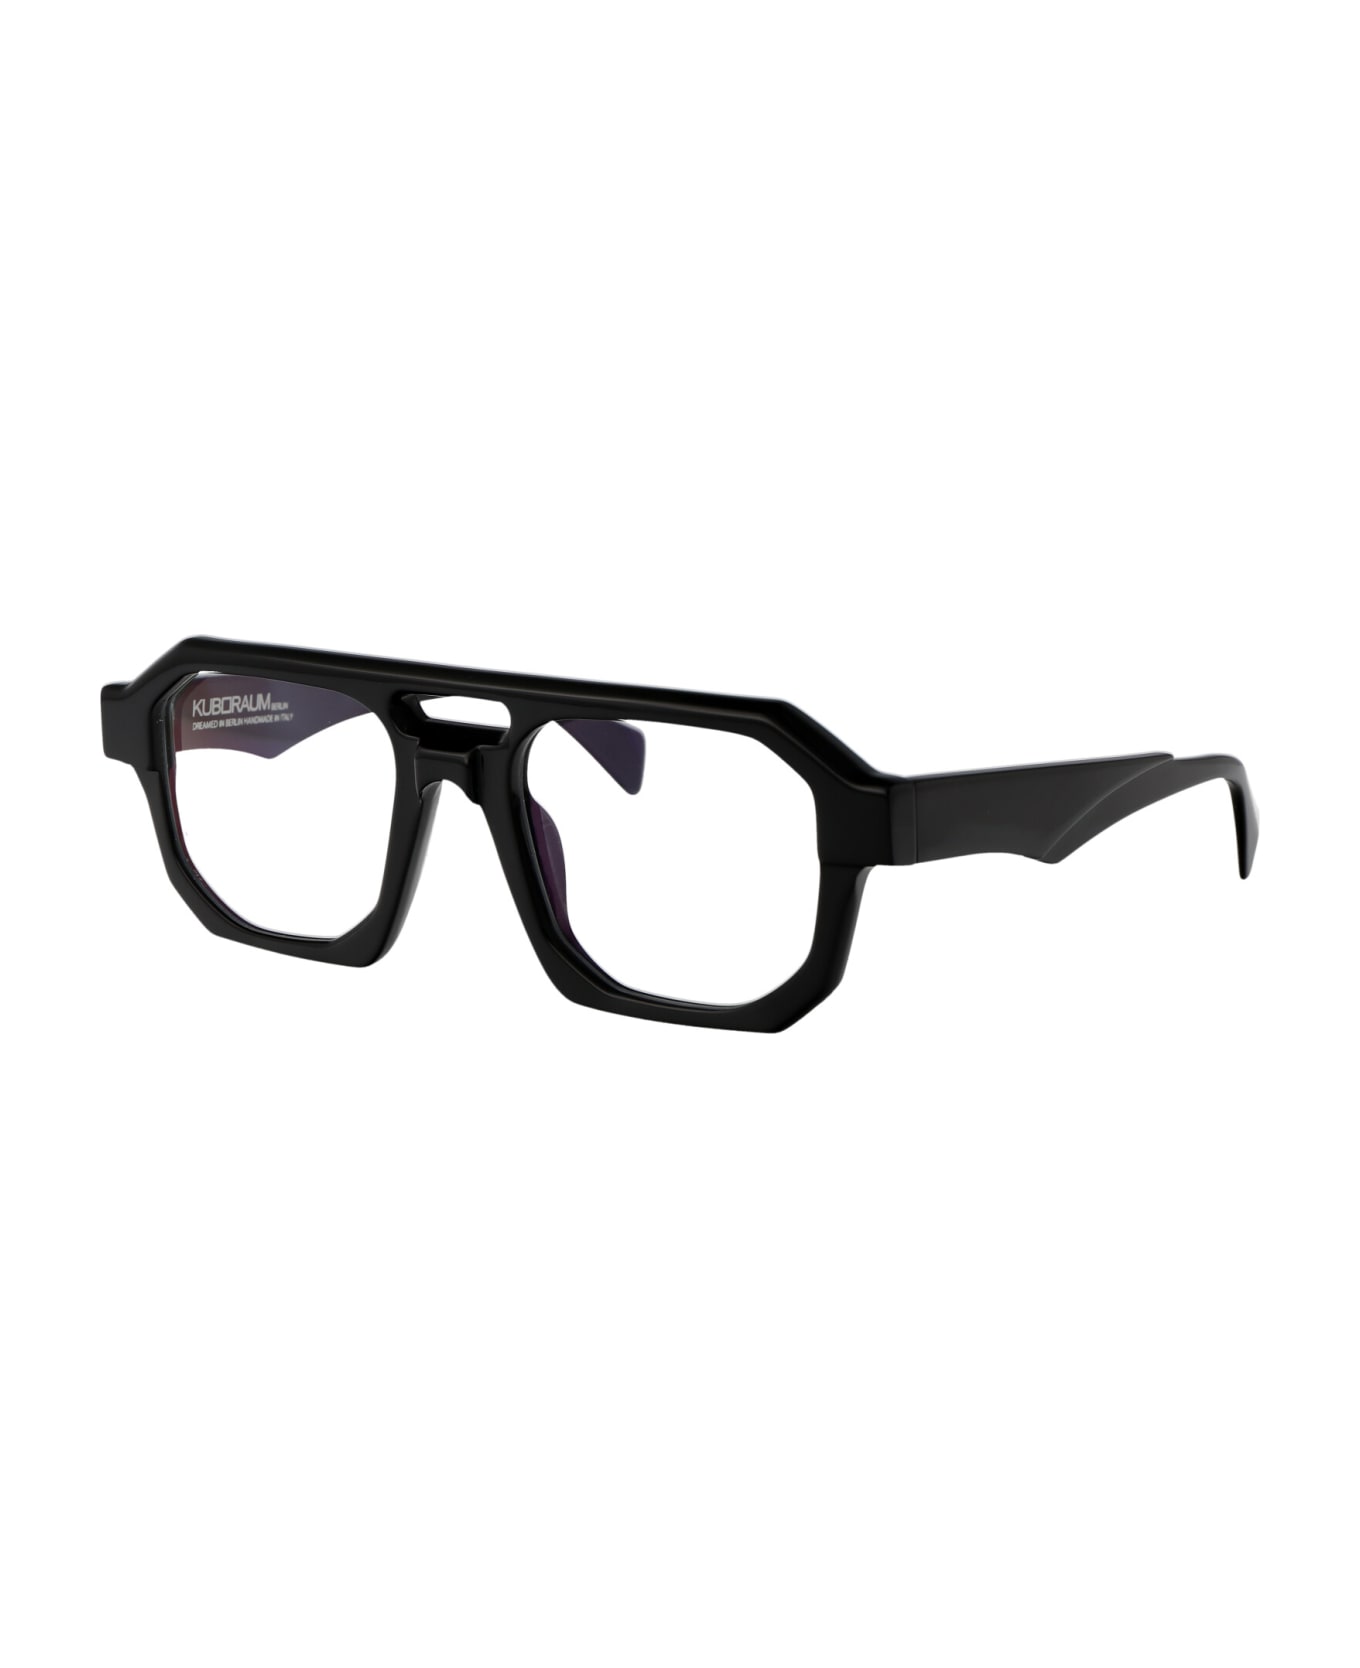 Kuboraum Maske K33 Glasses - BS BLACK